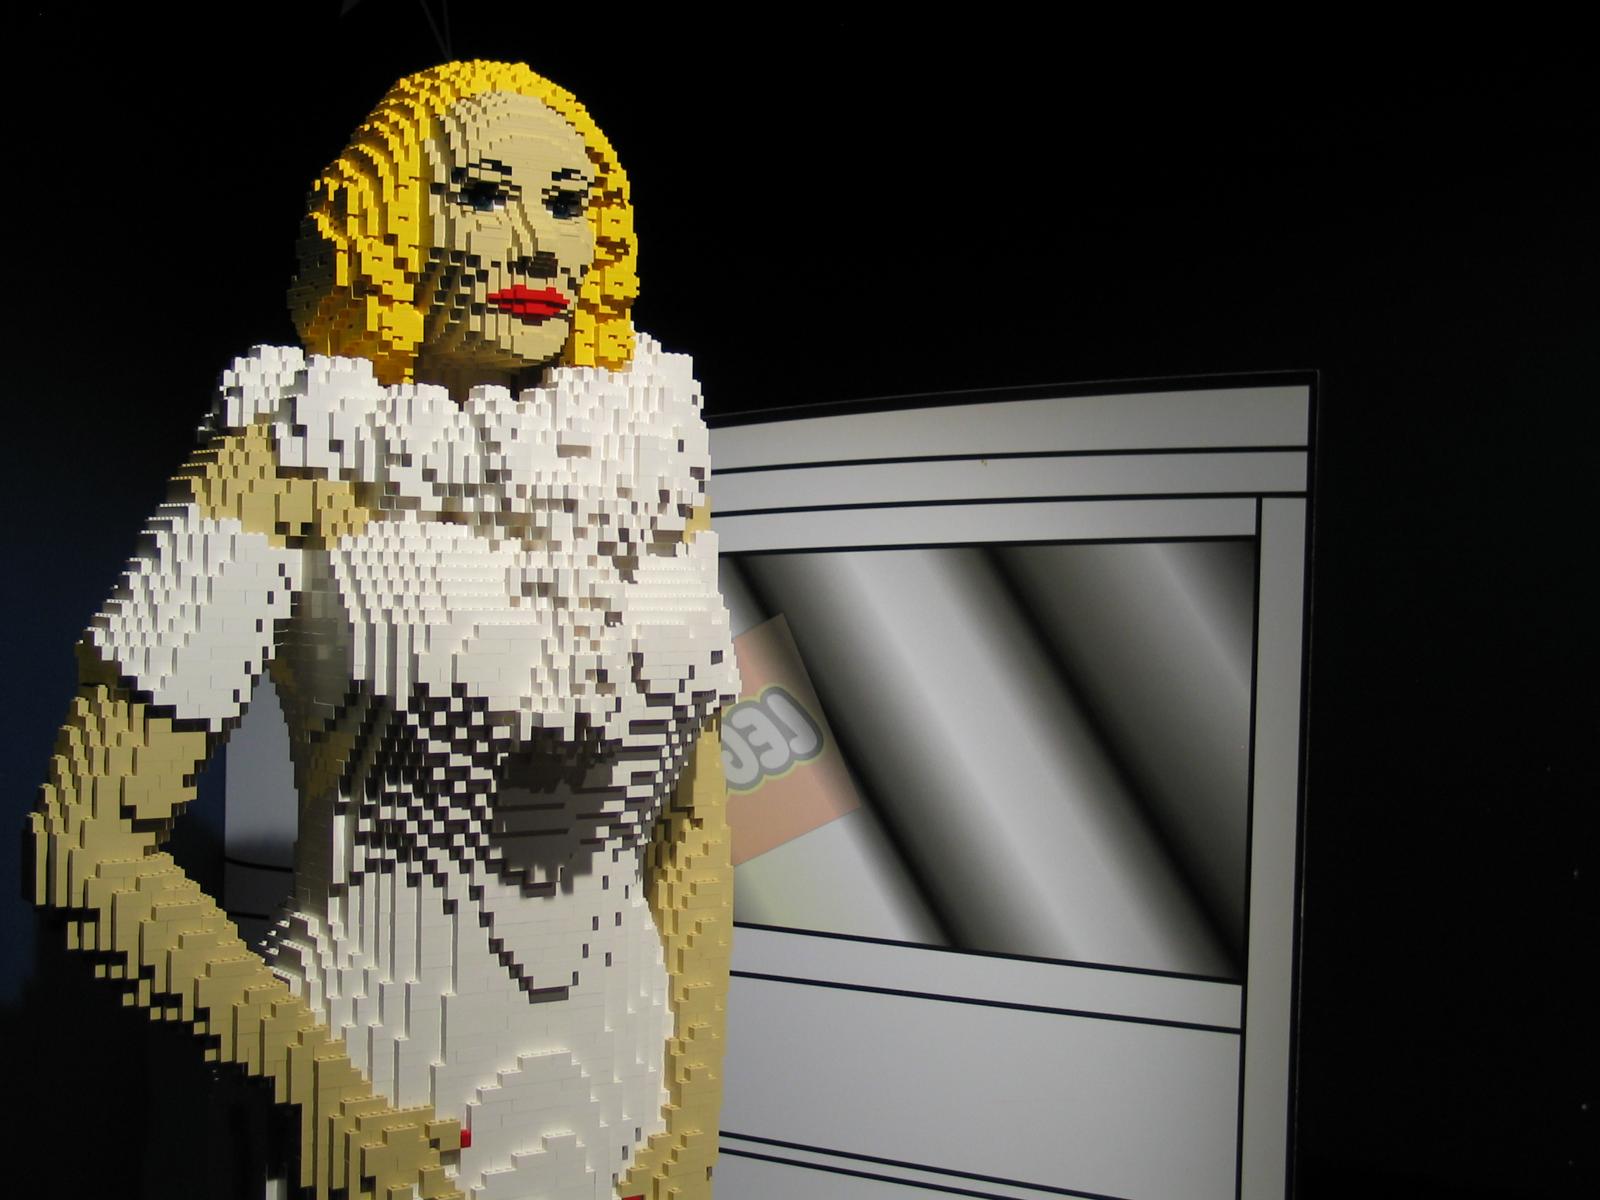 A Lego Maralin Monroe